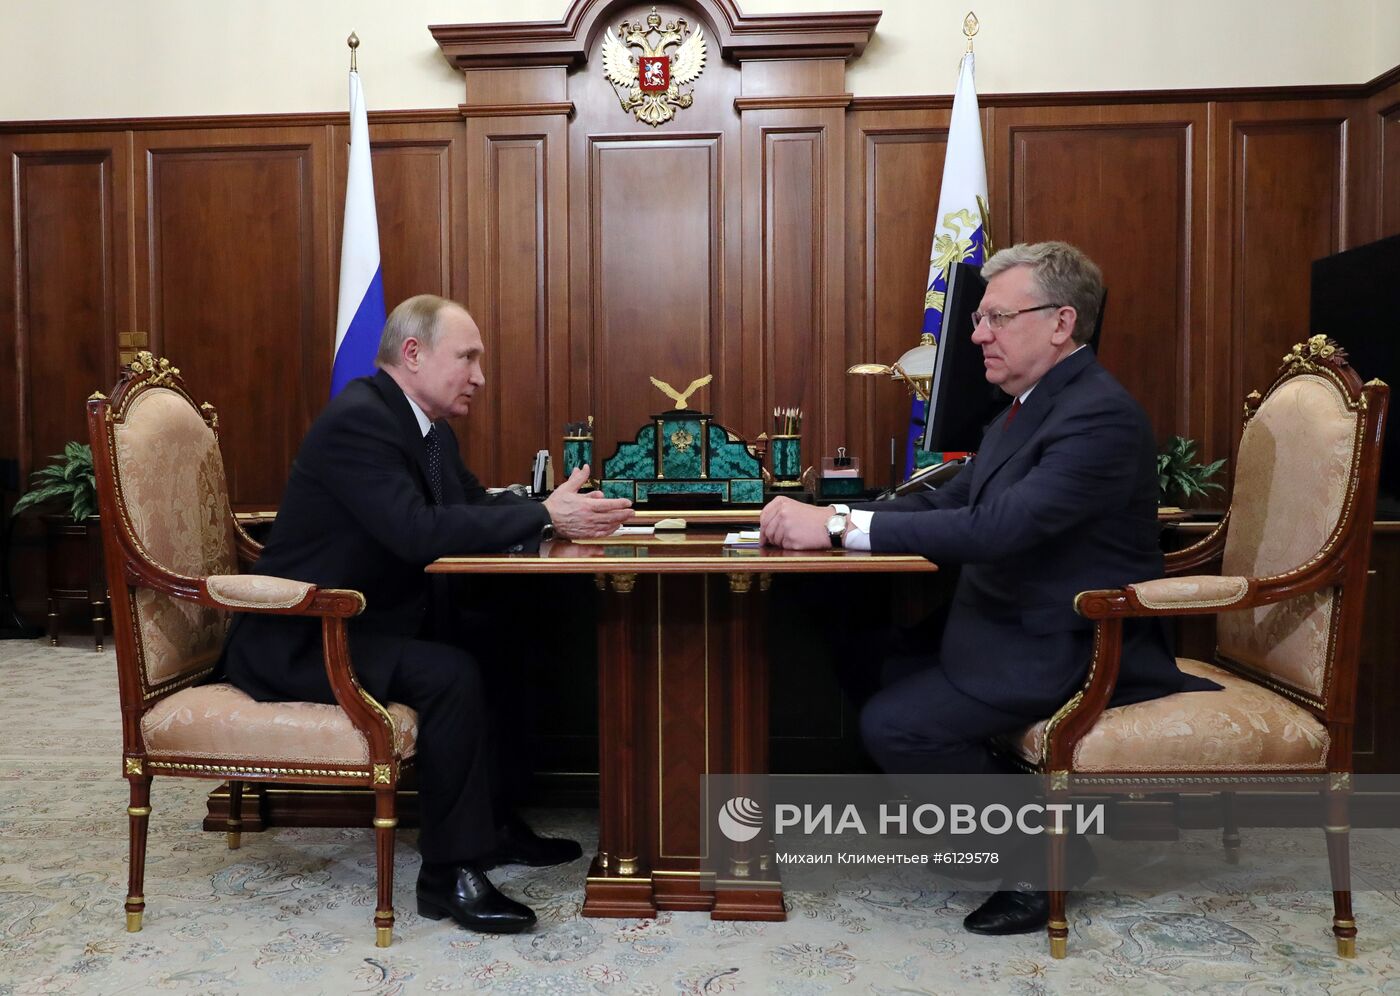 Рабочая встреча президента РФ В. Путина с главой Счётной палаты РФ А. Кудриным